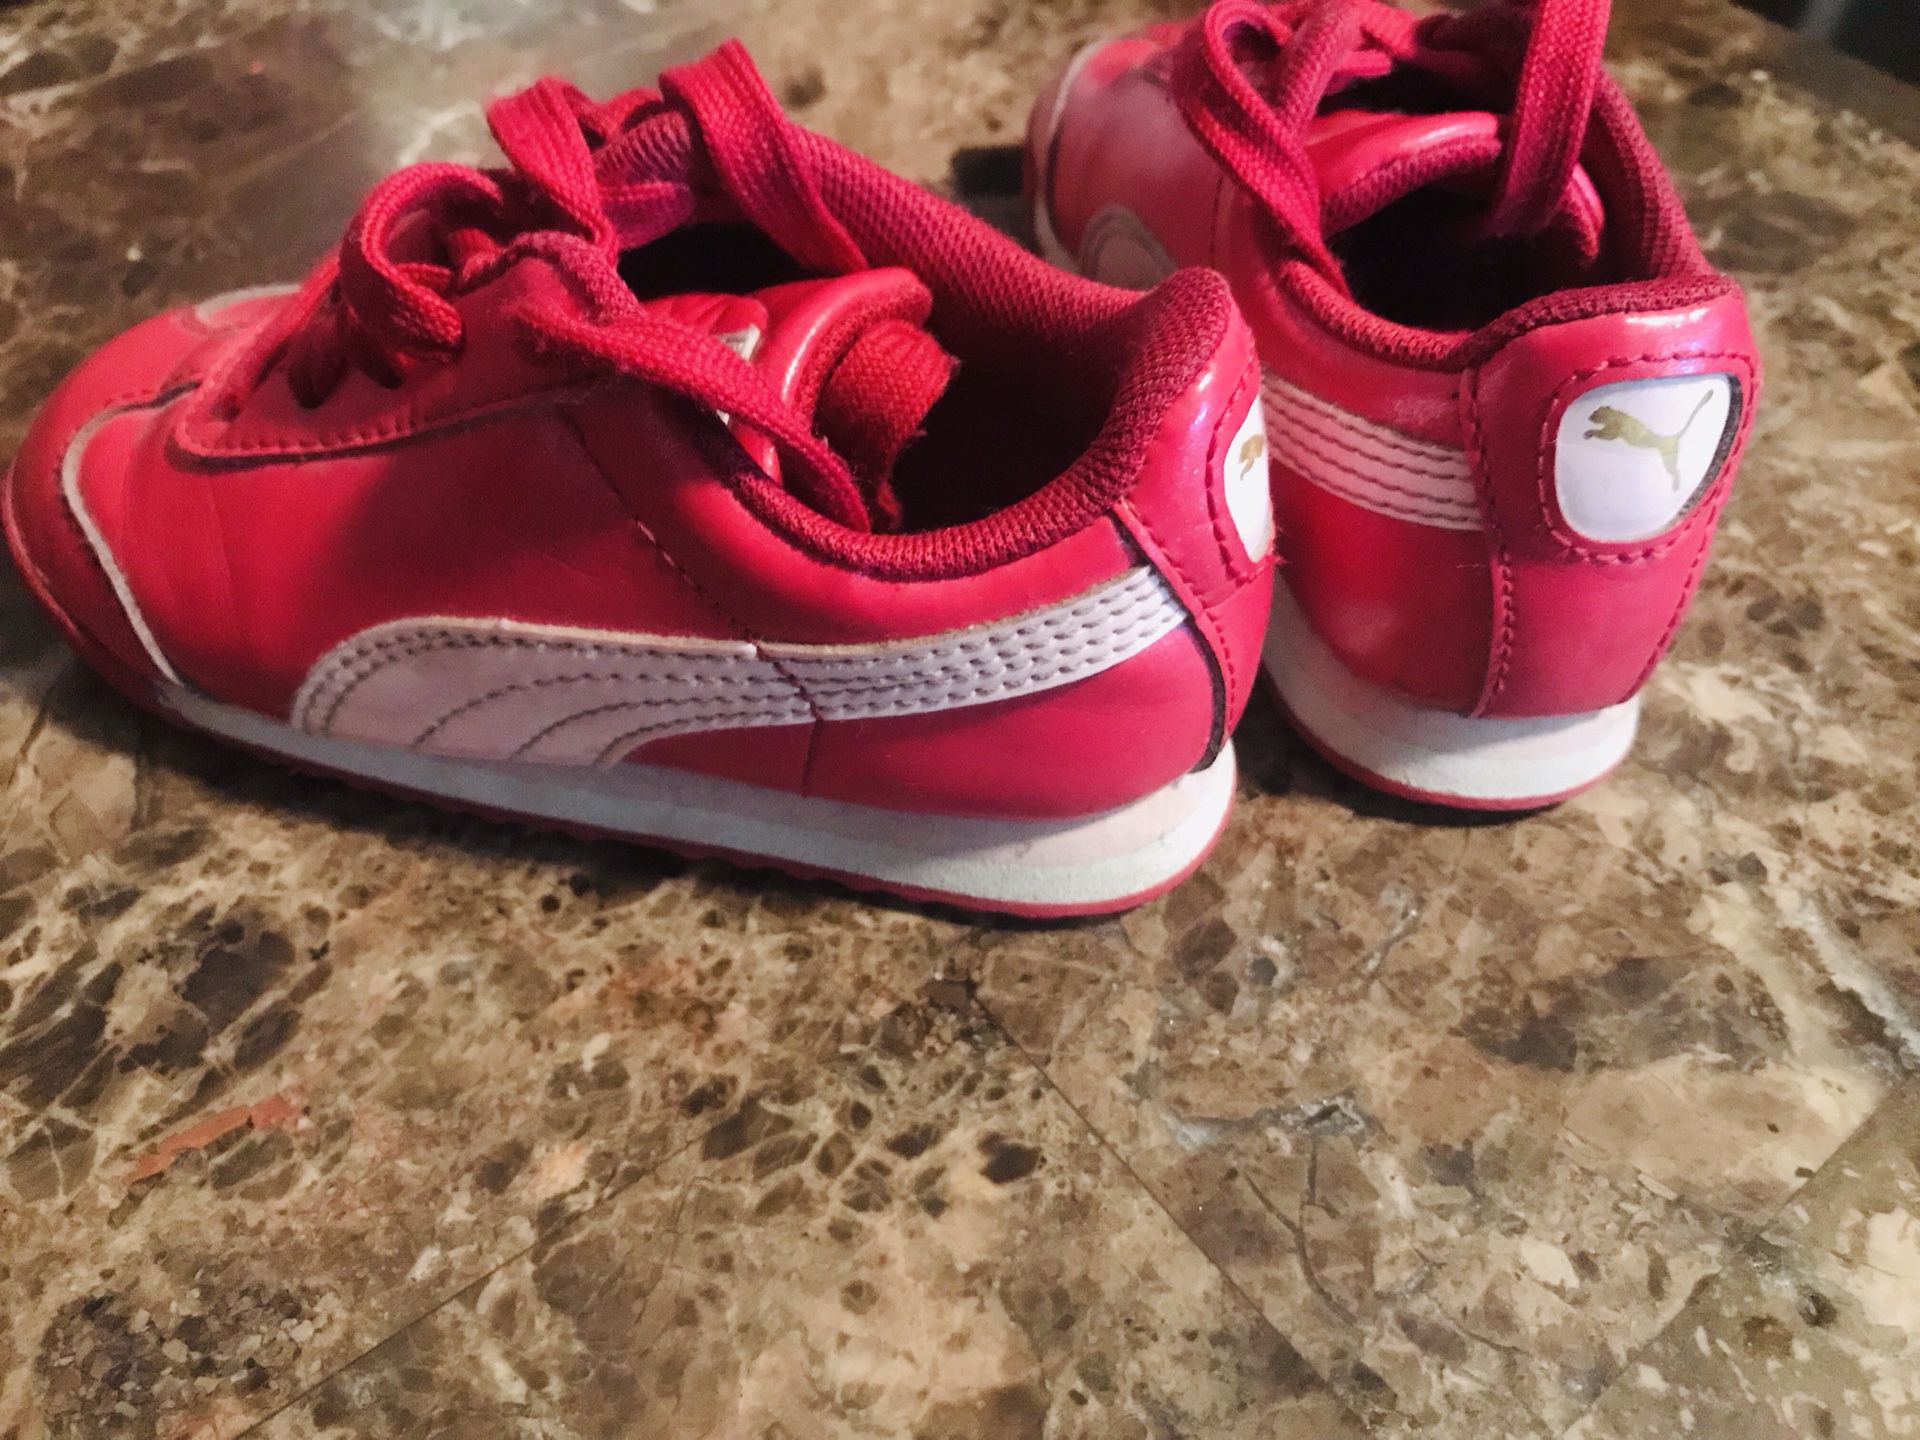 Toddler shoes Puma and Jordan